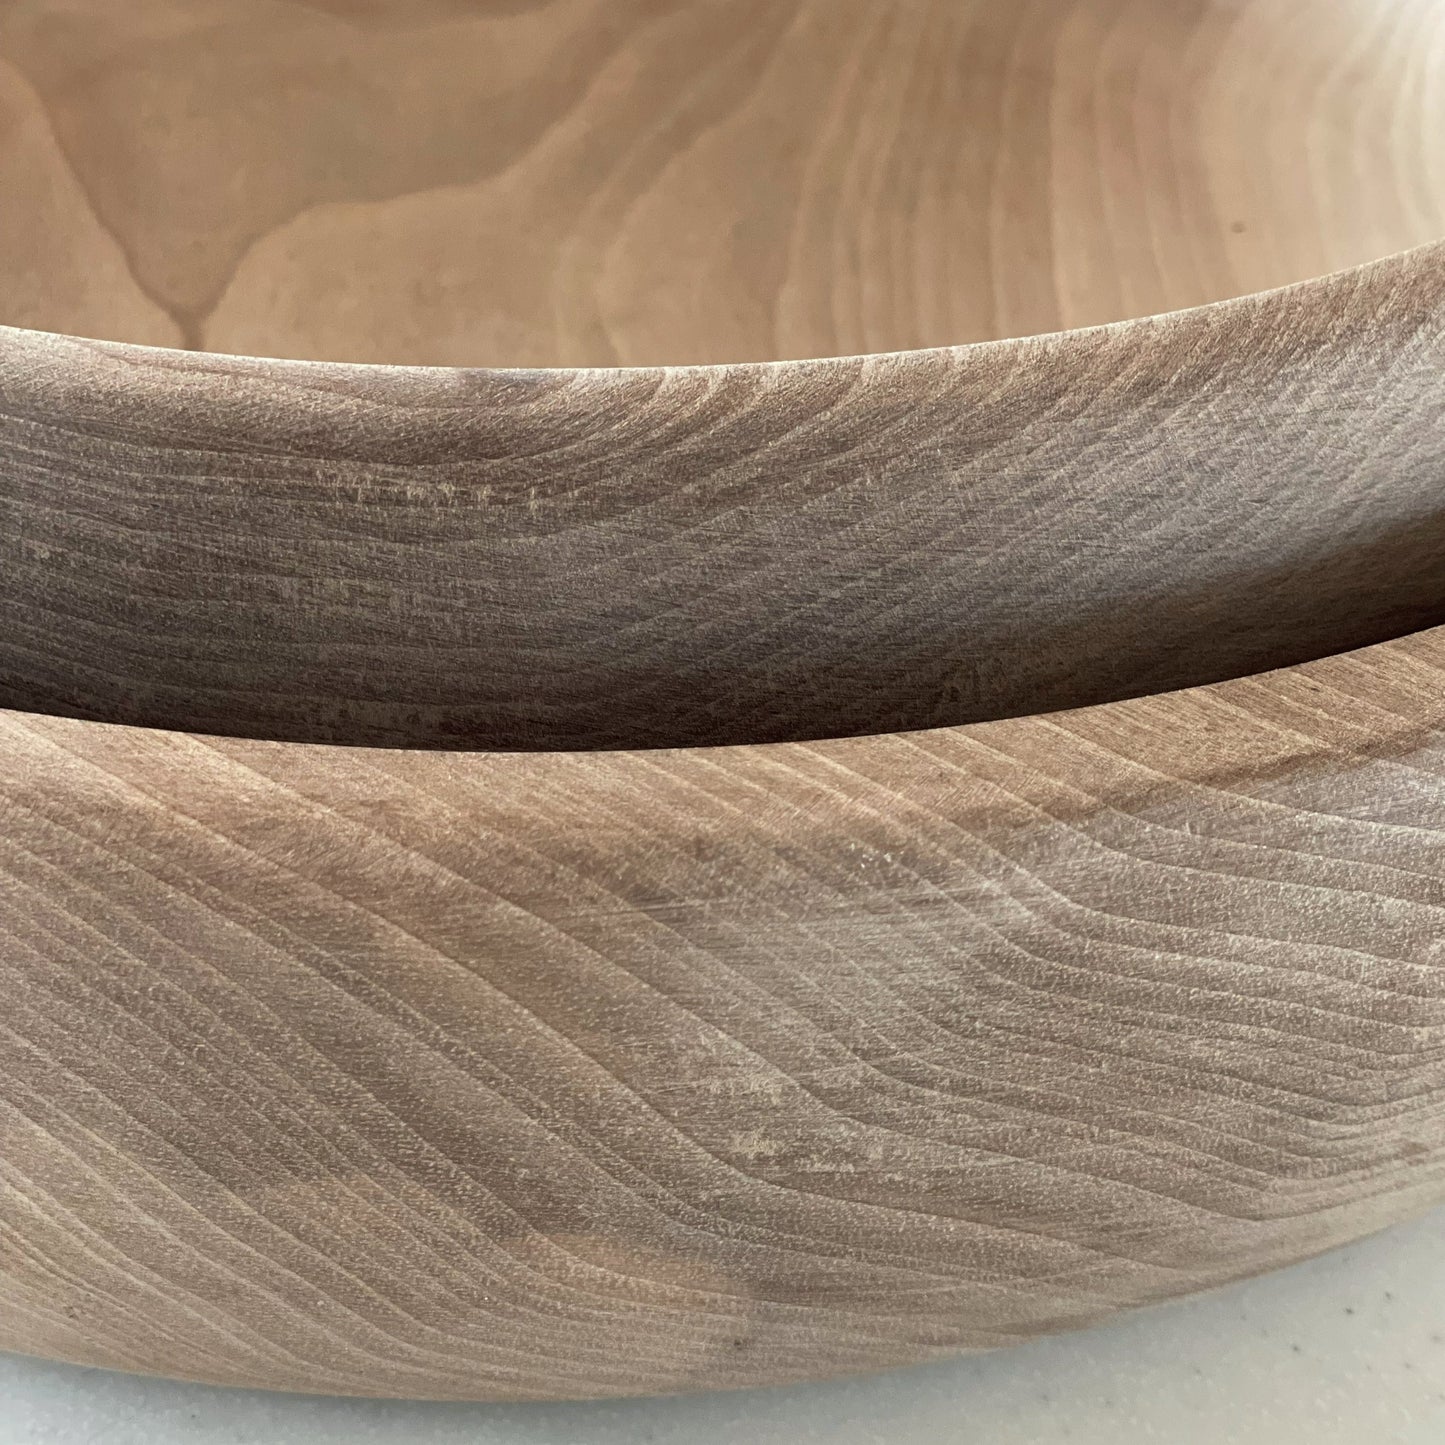 Bowl in walnut wood - 30 cm